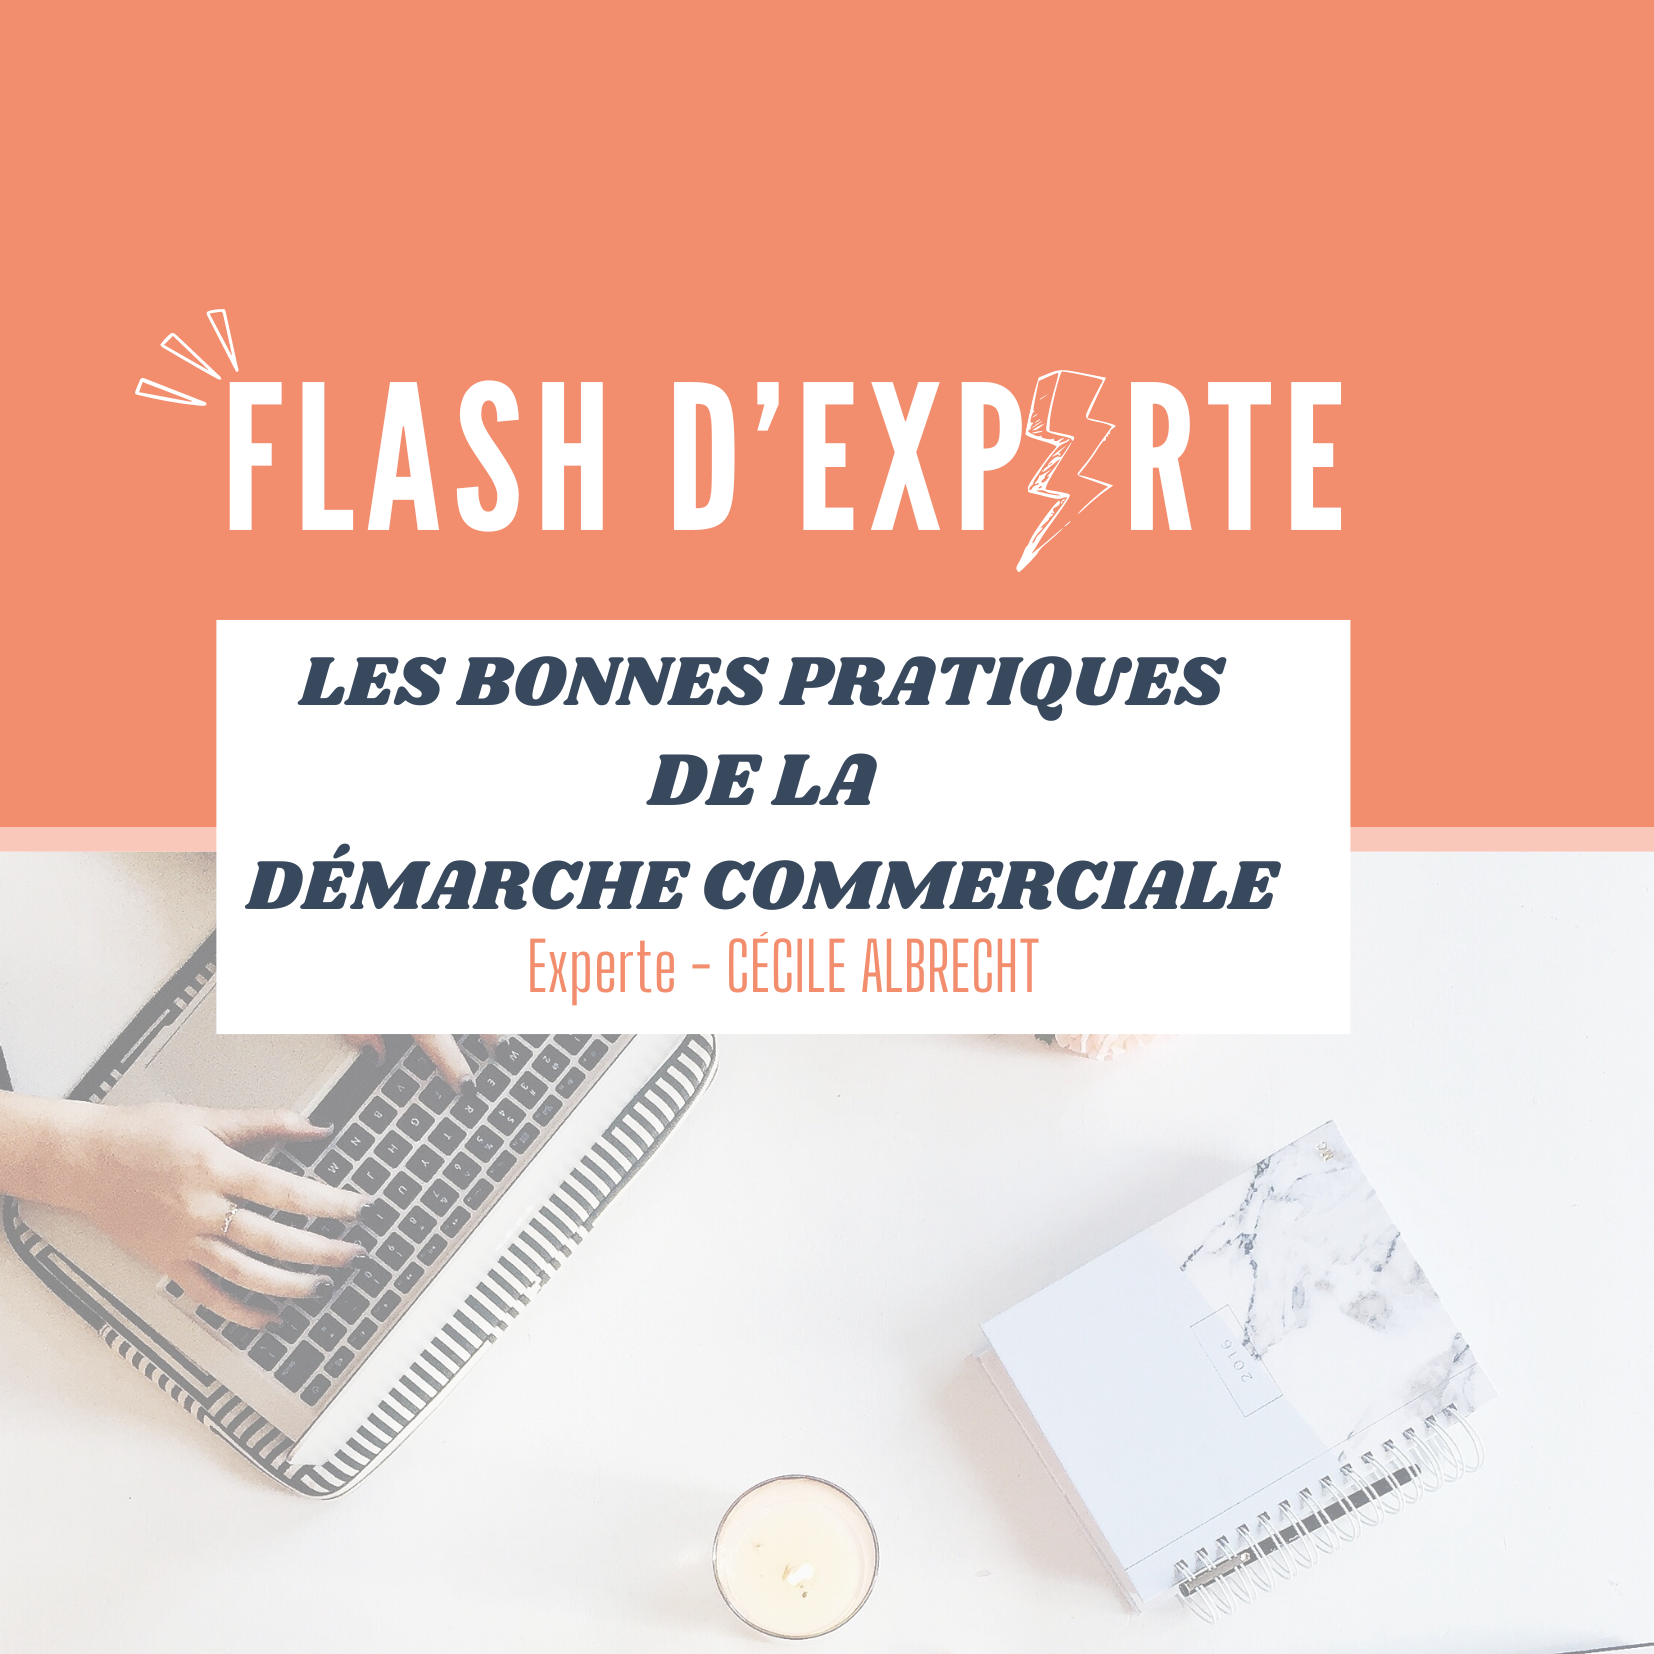 FLASH D'EXPERTE - LES BONNES PRATIQUES DE LA DÉMARCHE COMMERCIALE